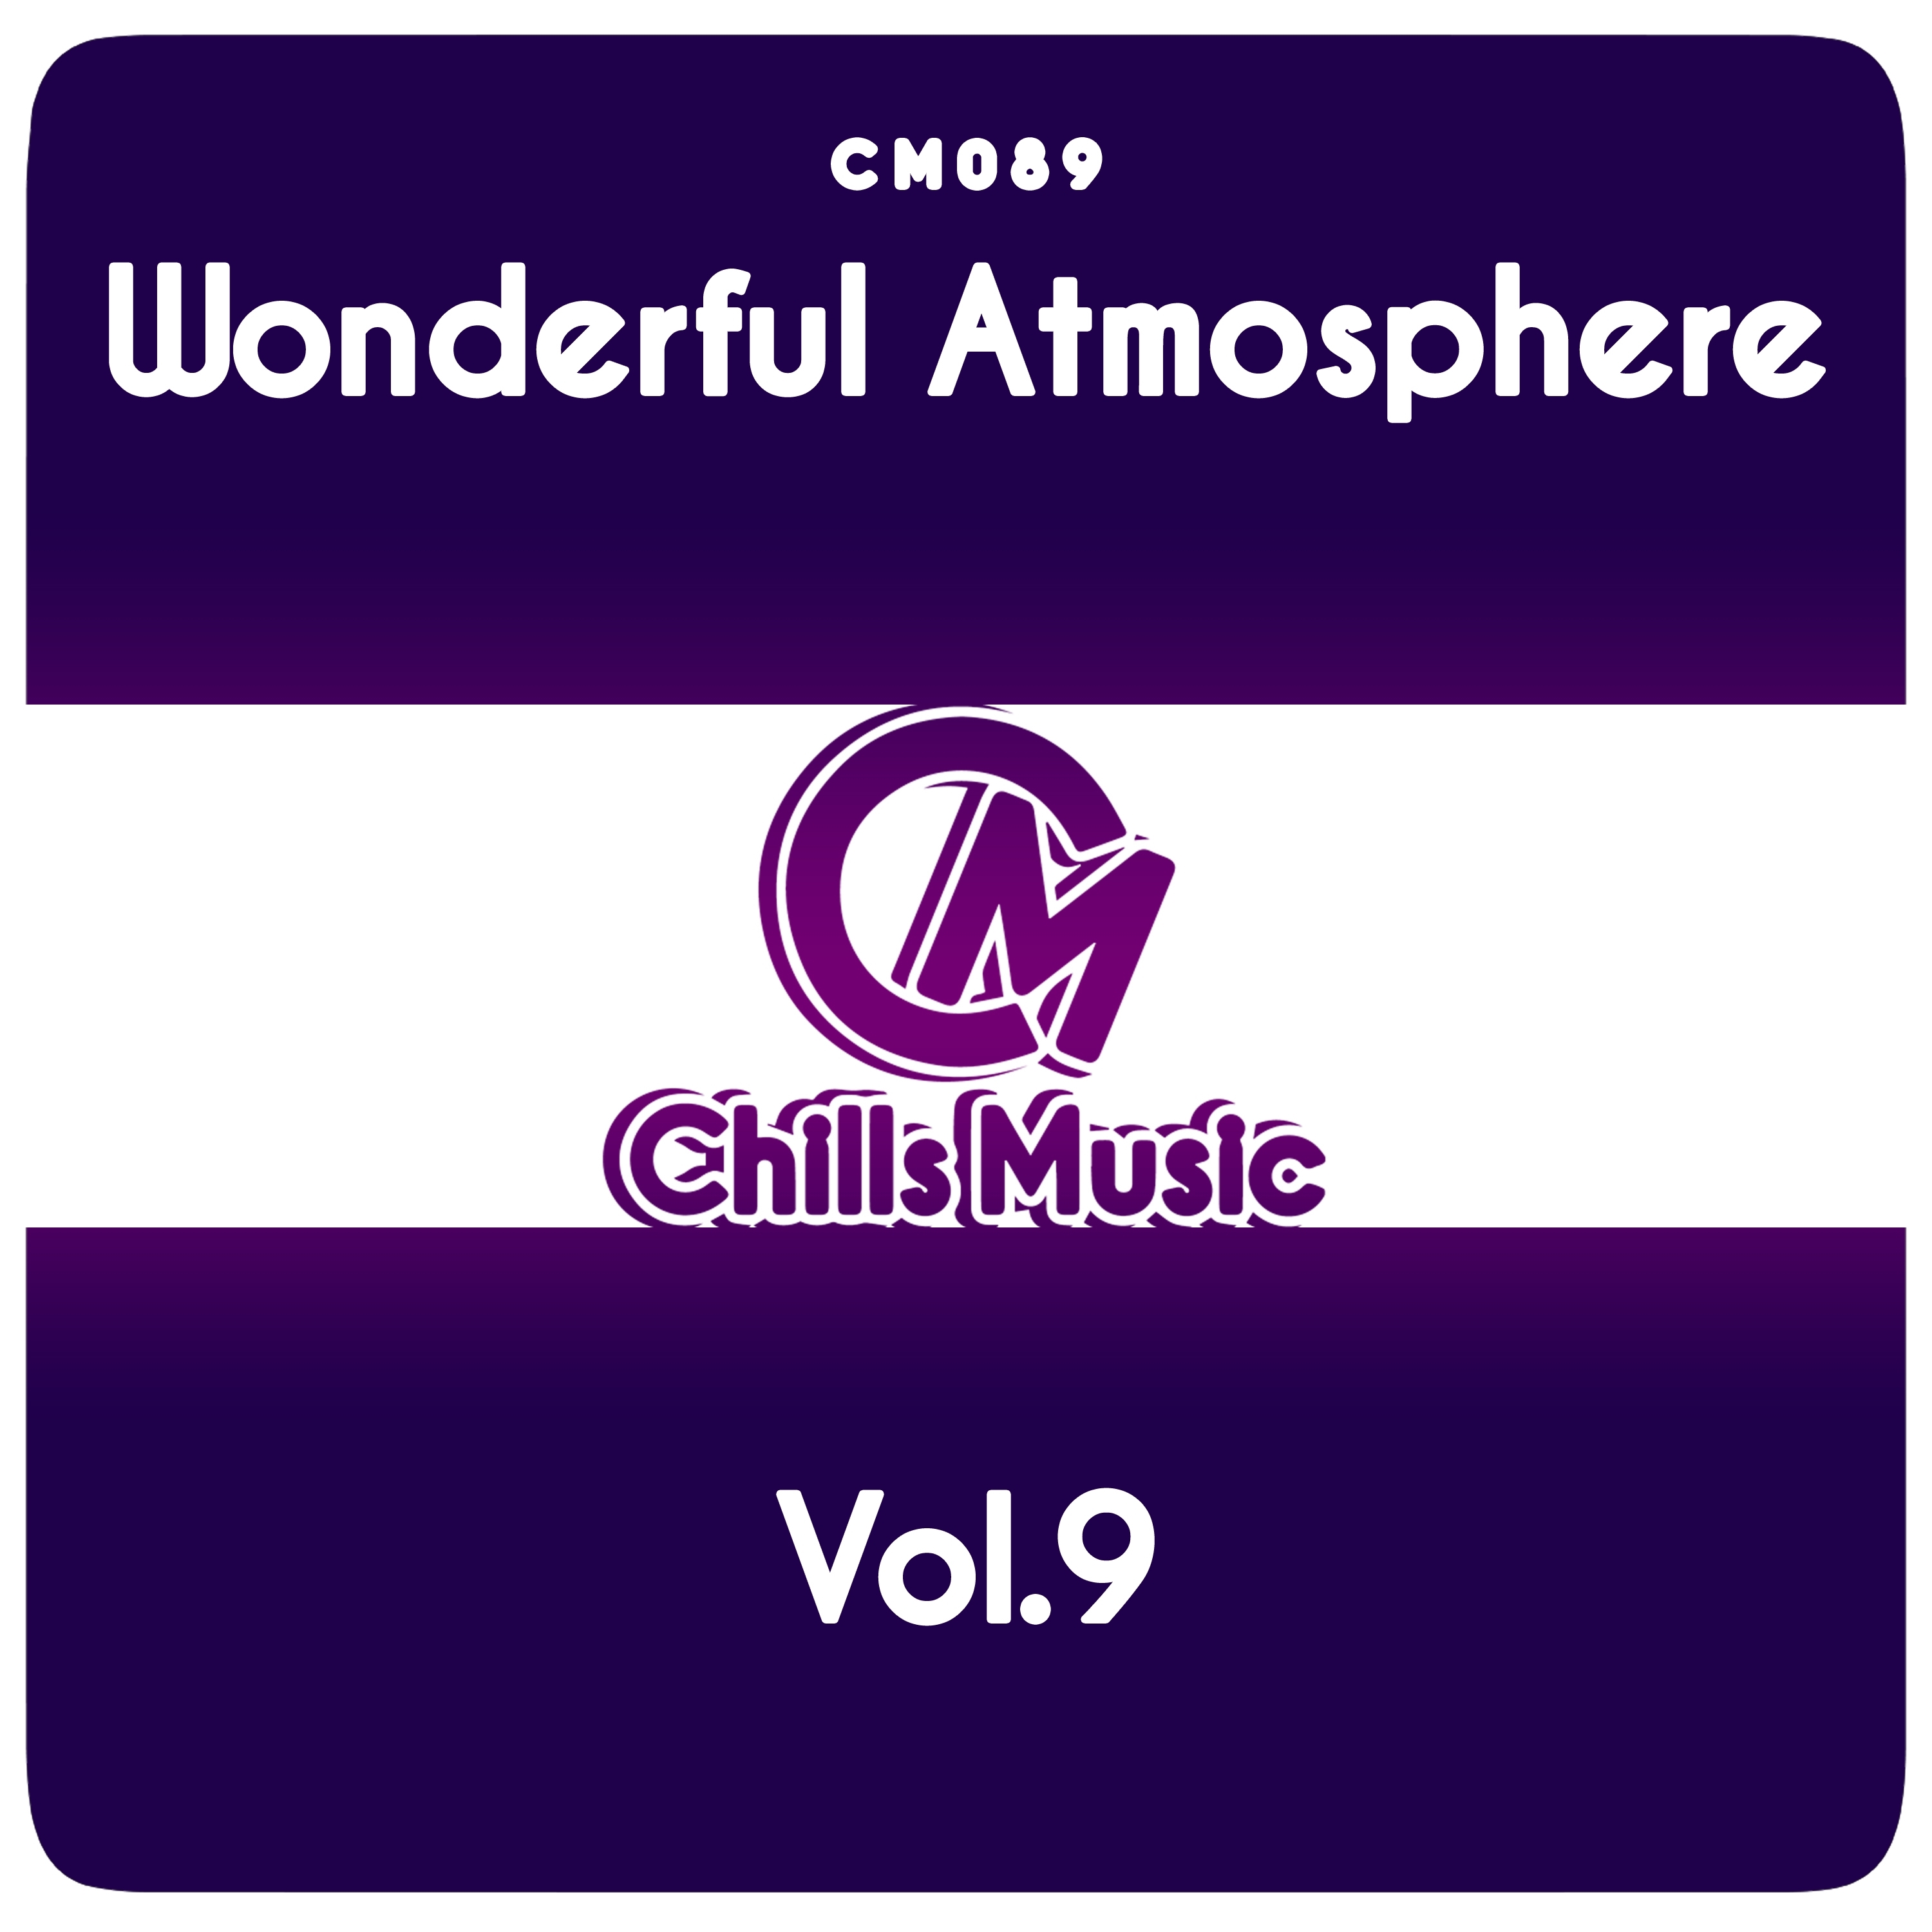 Wonderful Atmosphere Vol.9